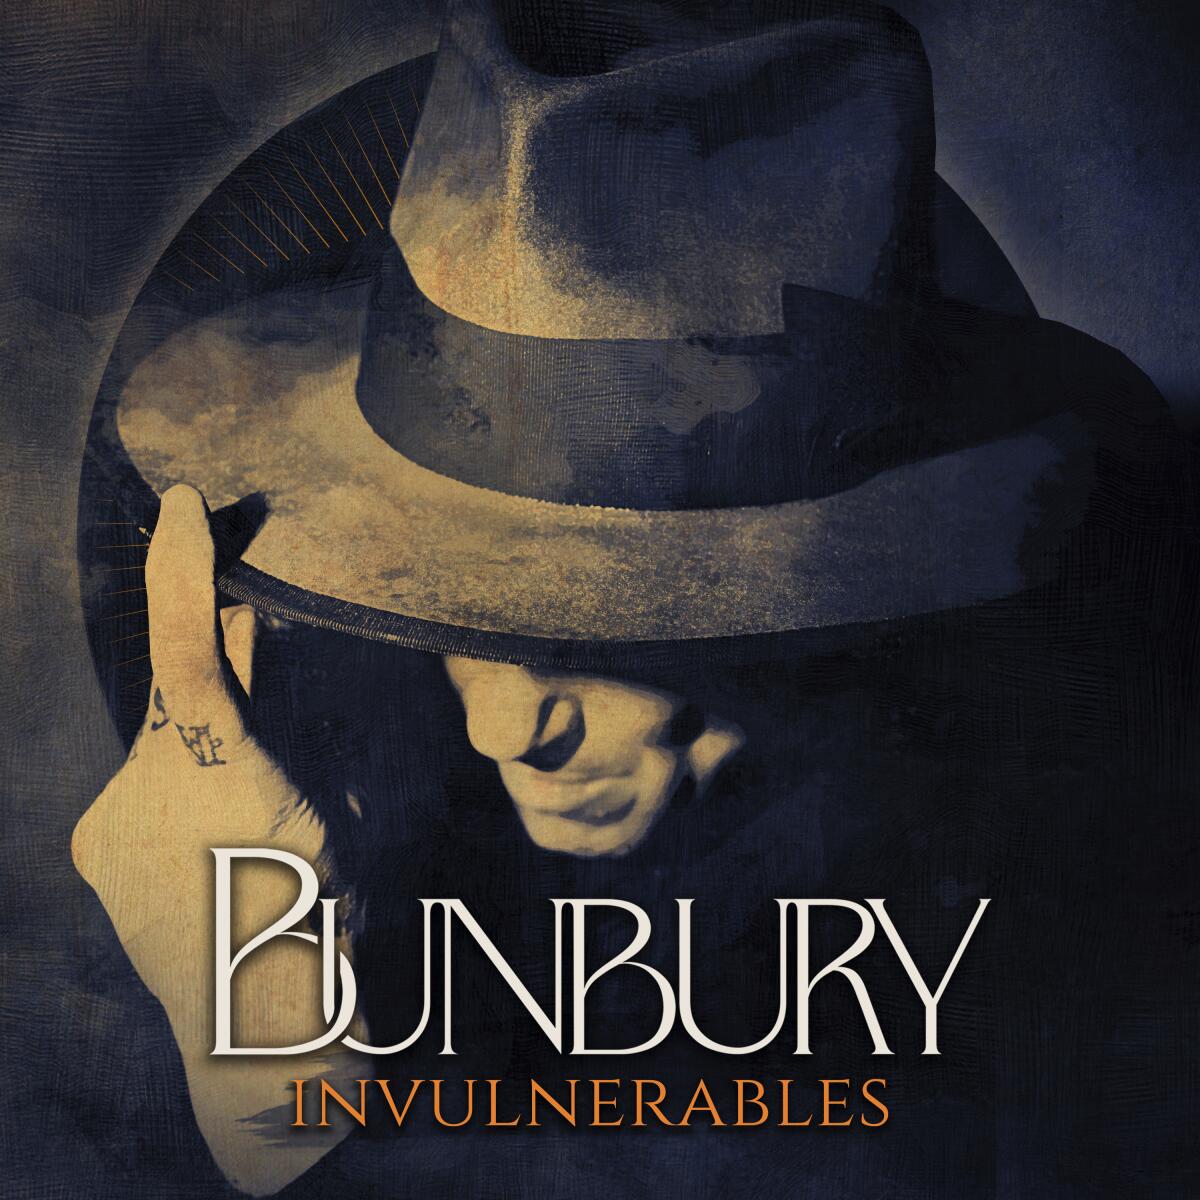 el arte del sencillo "Invulnerables" de Enrique Bunbury. (Servidor de Nadie/Criteria Entertainment via AP)